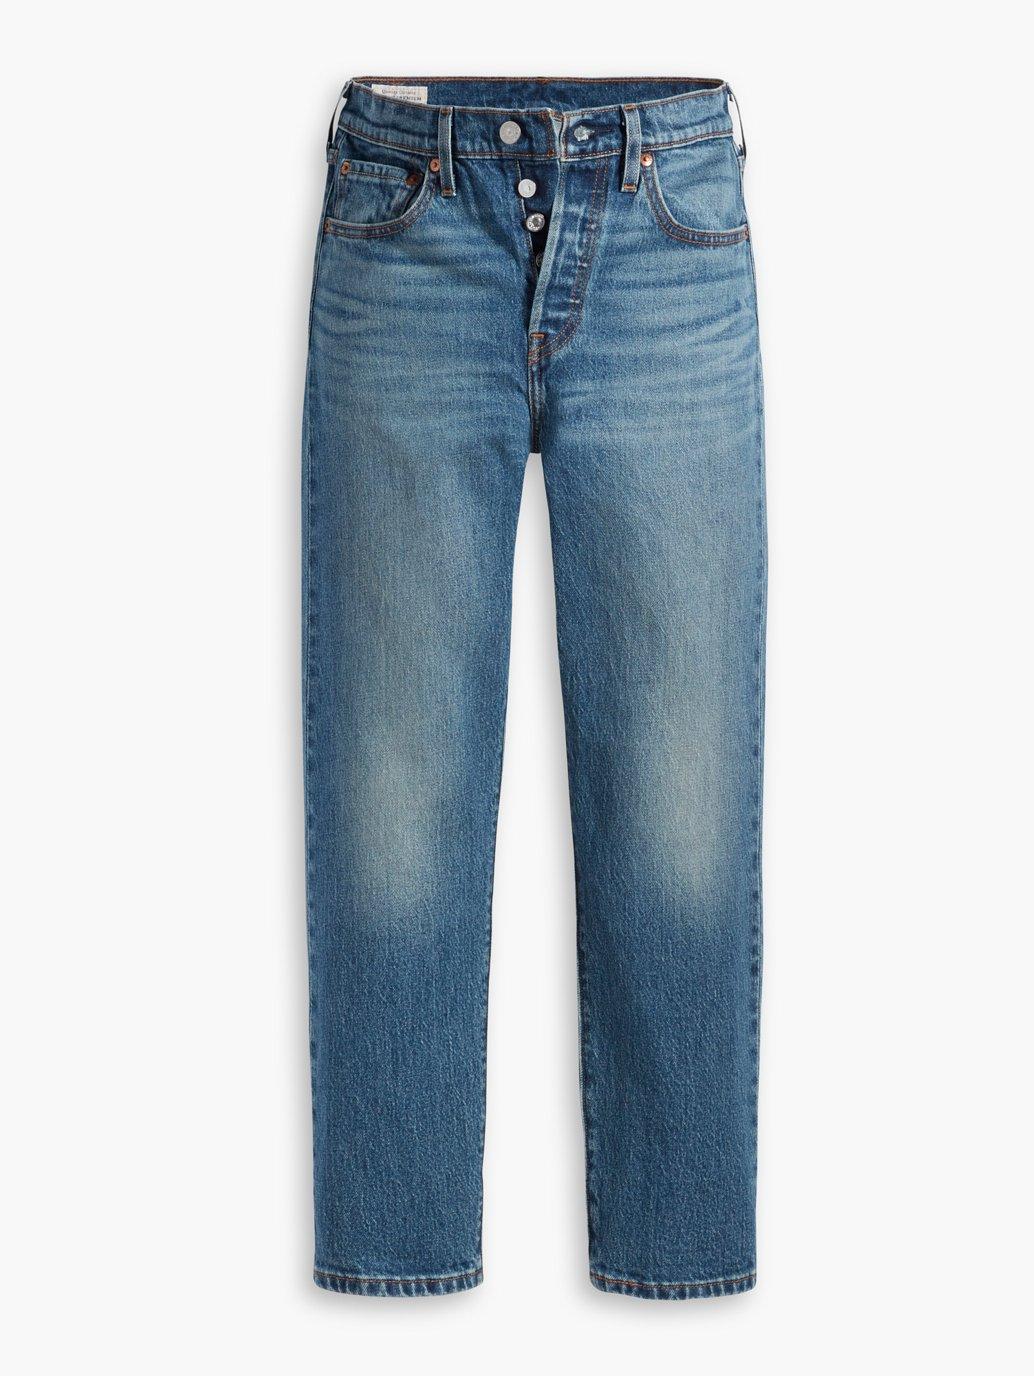 Buy Levi's® Women's 501® Original Cropped Jeans| Levi's Official Online ...